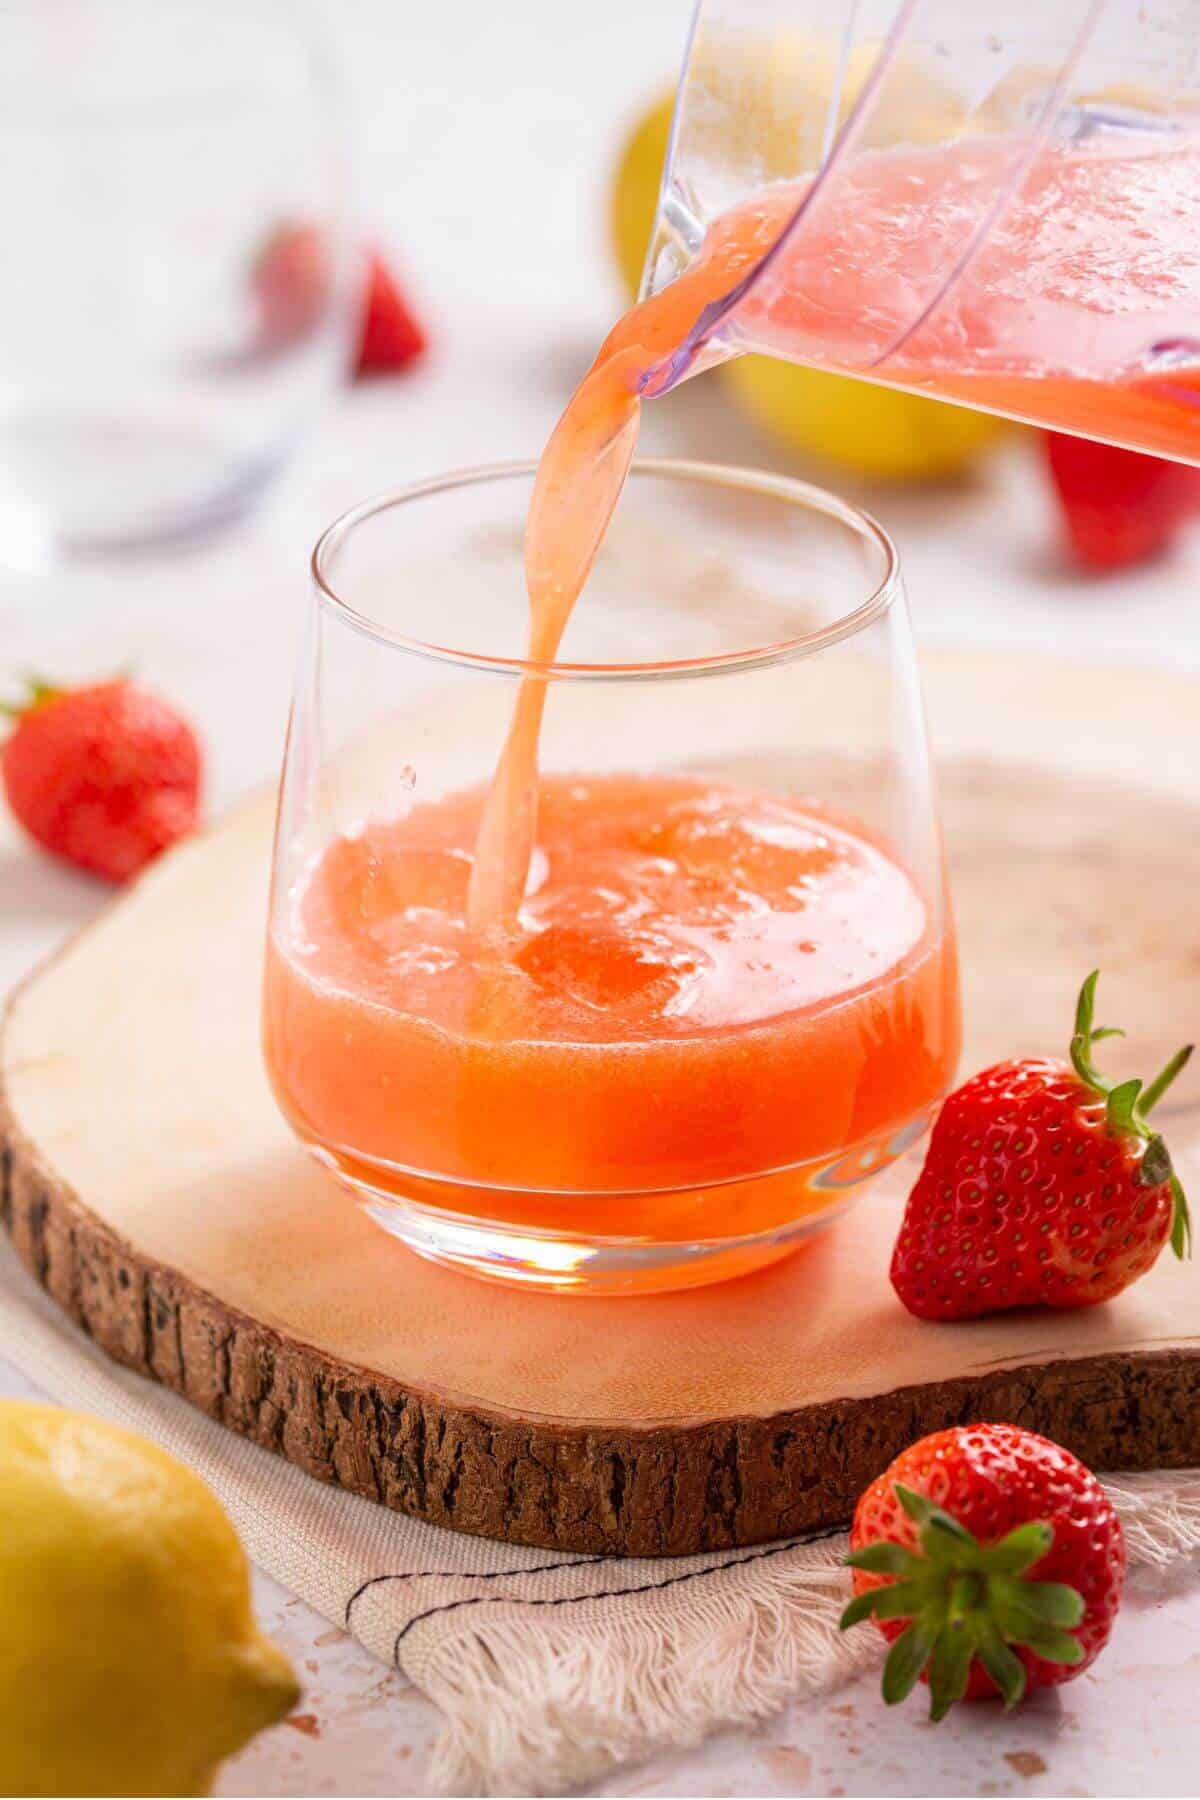 Pouring strawberry lemonade into a glass.